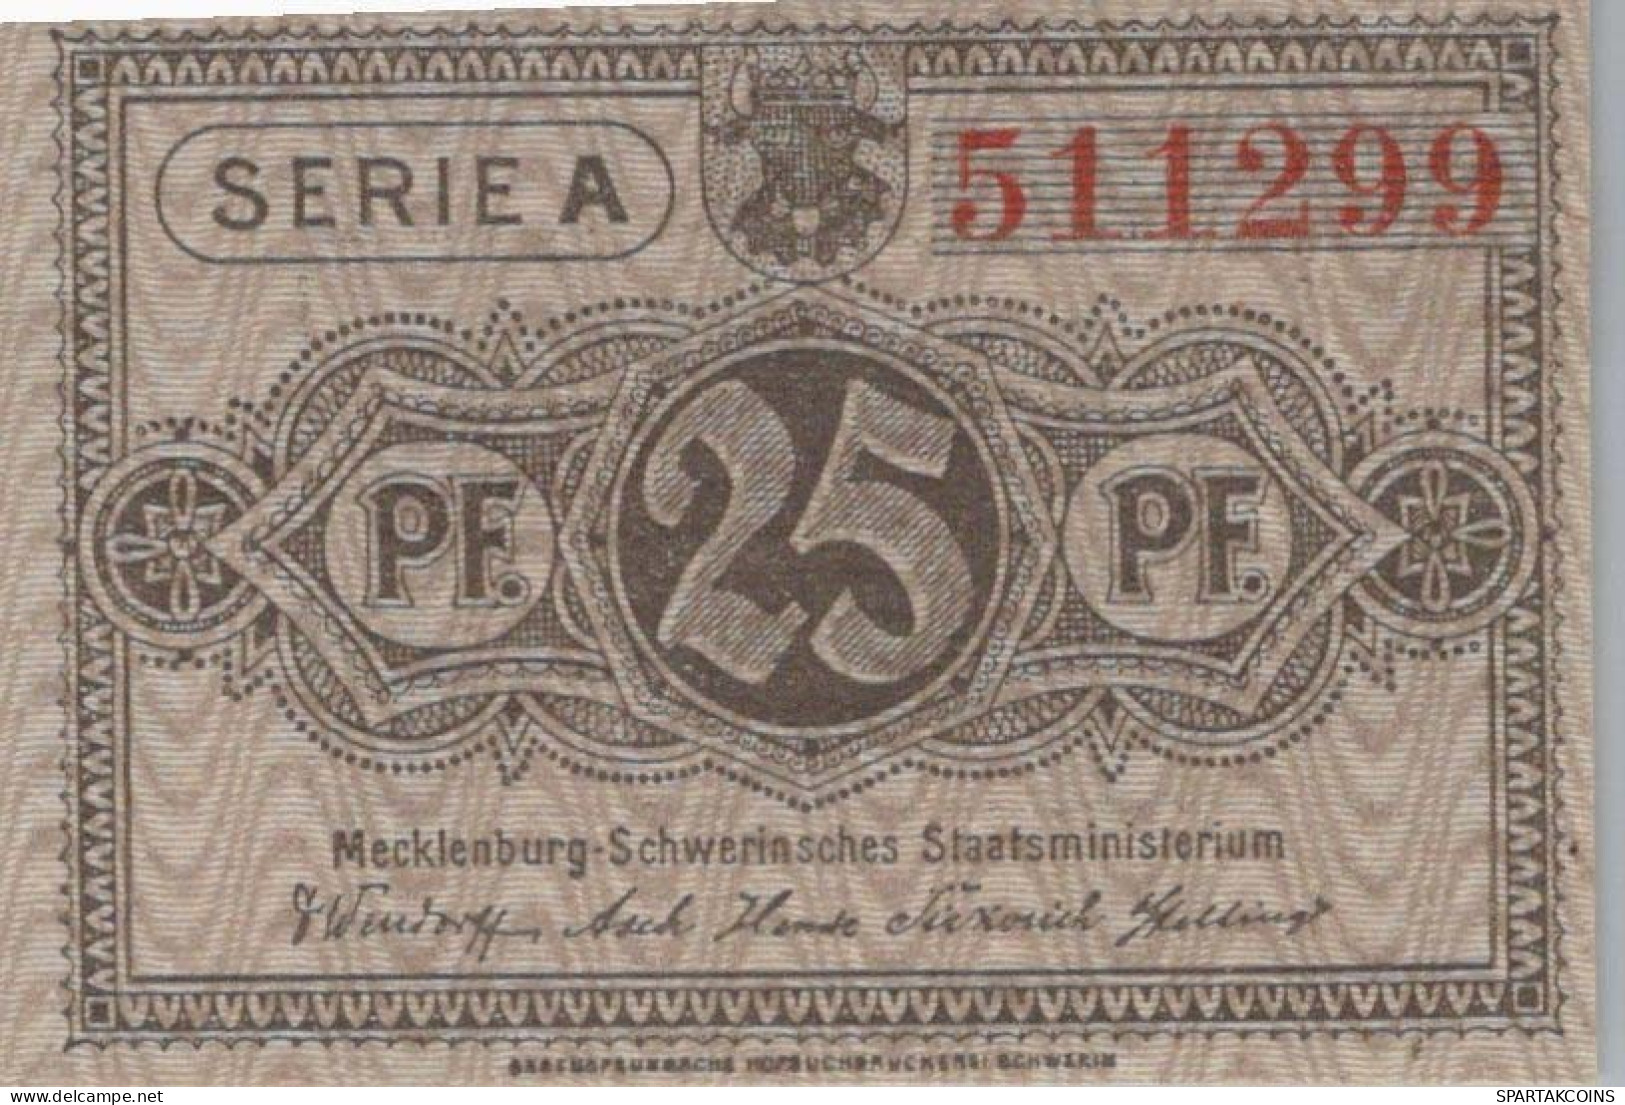 25 PFENNIG 1922 MECKLENBURG-SCHWERIN Mecklenburg-Schwerin DEUTSCHLAND #PF692 - [11] Local Banknote Issues